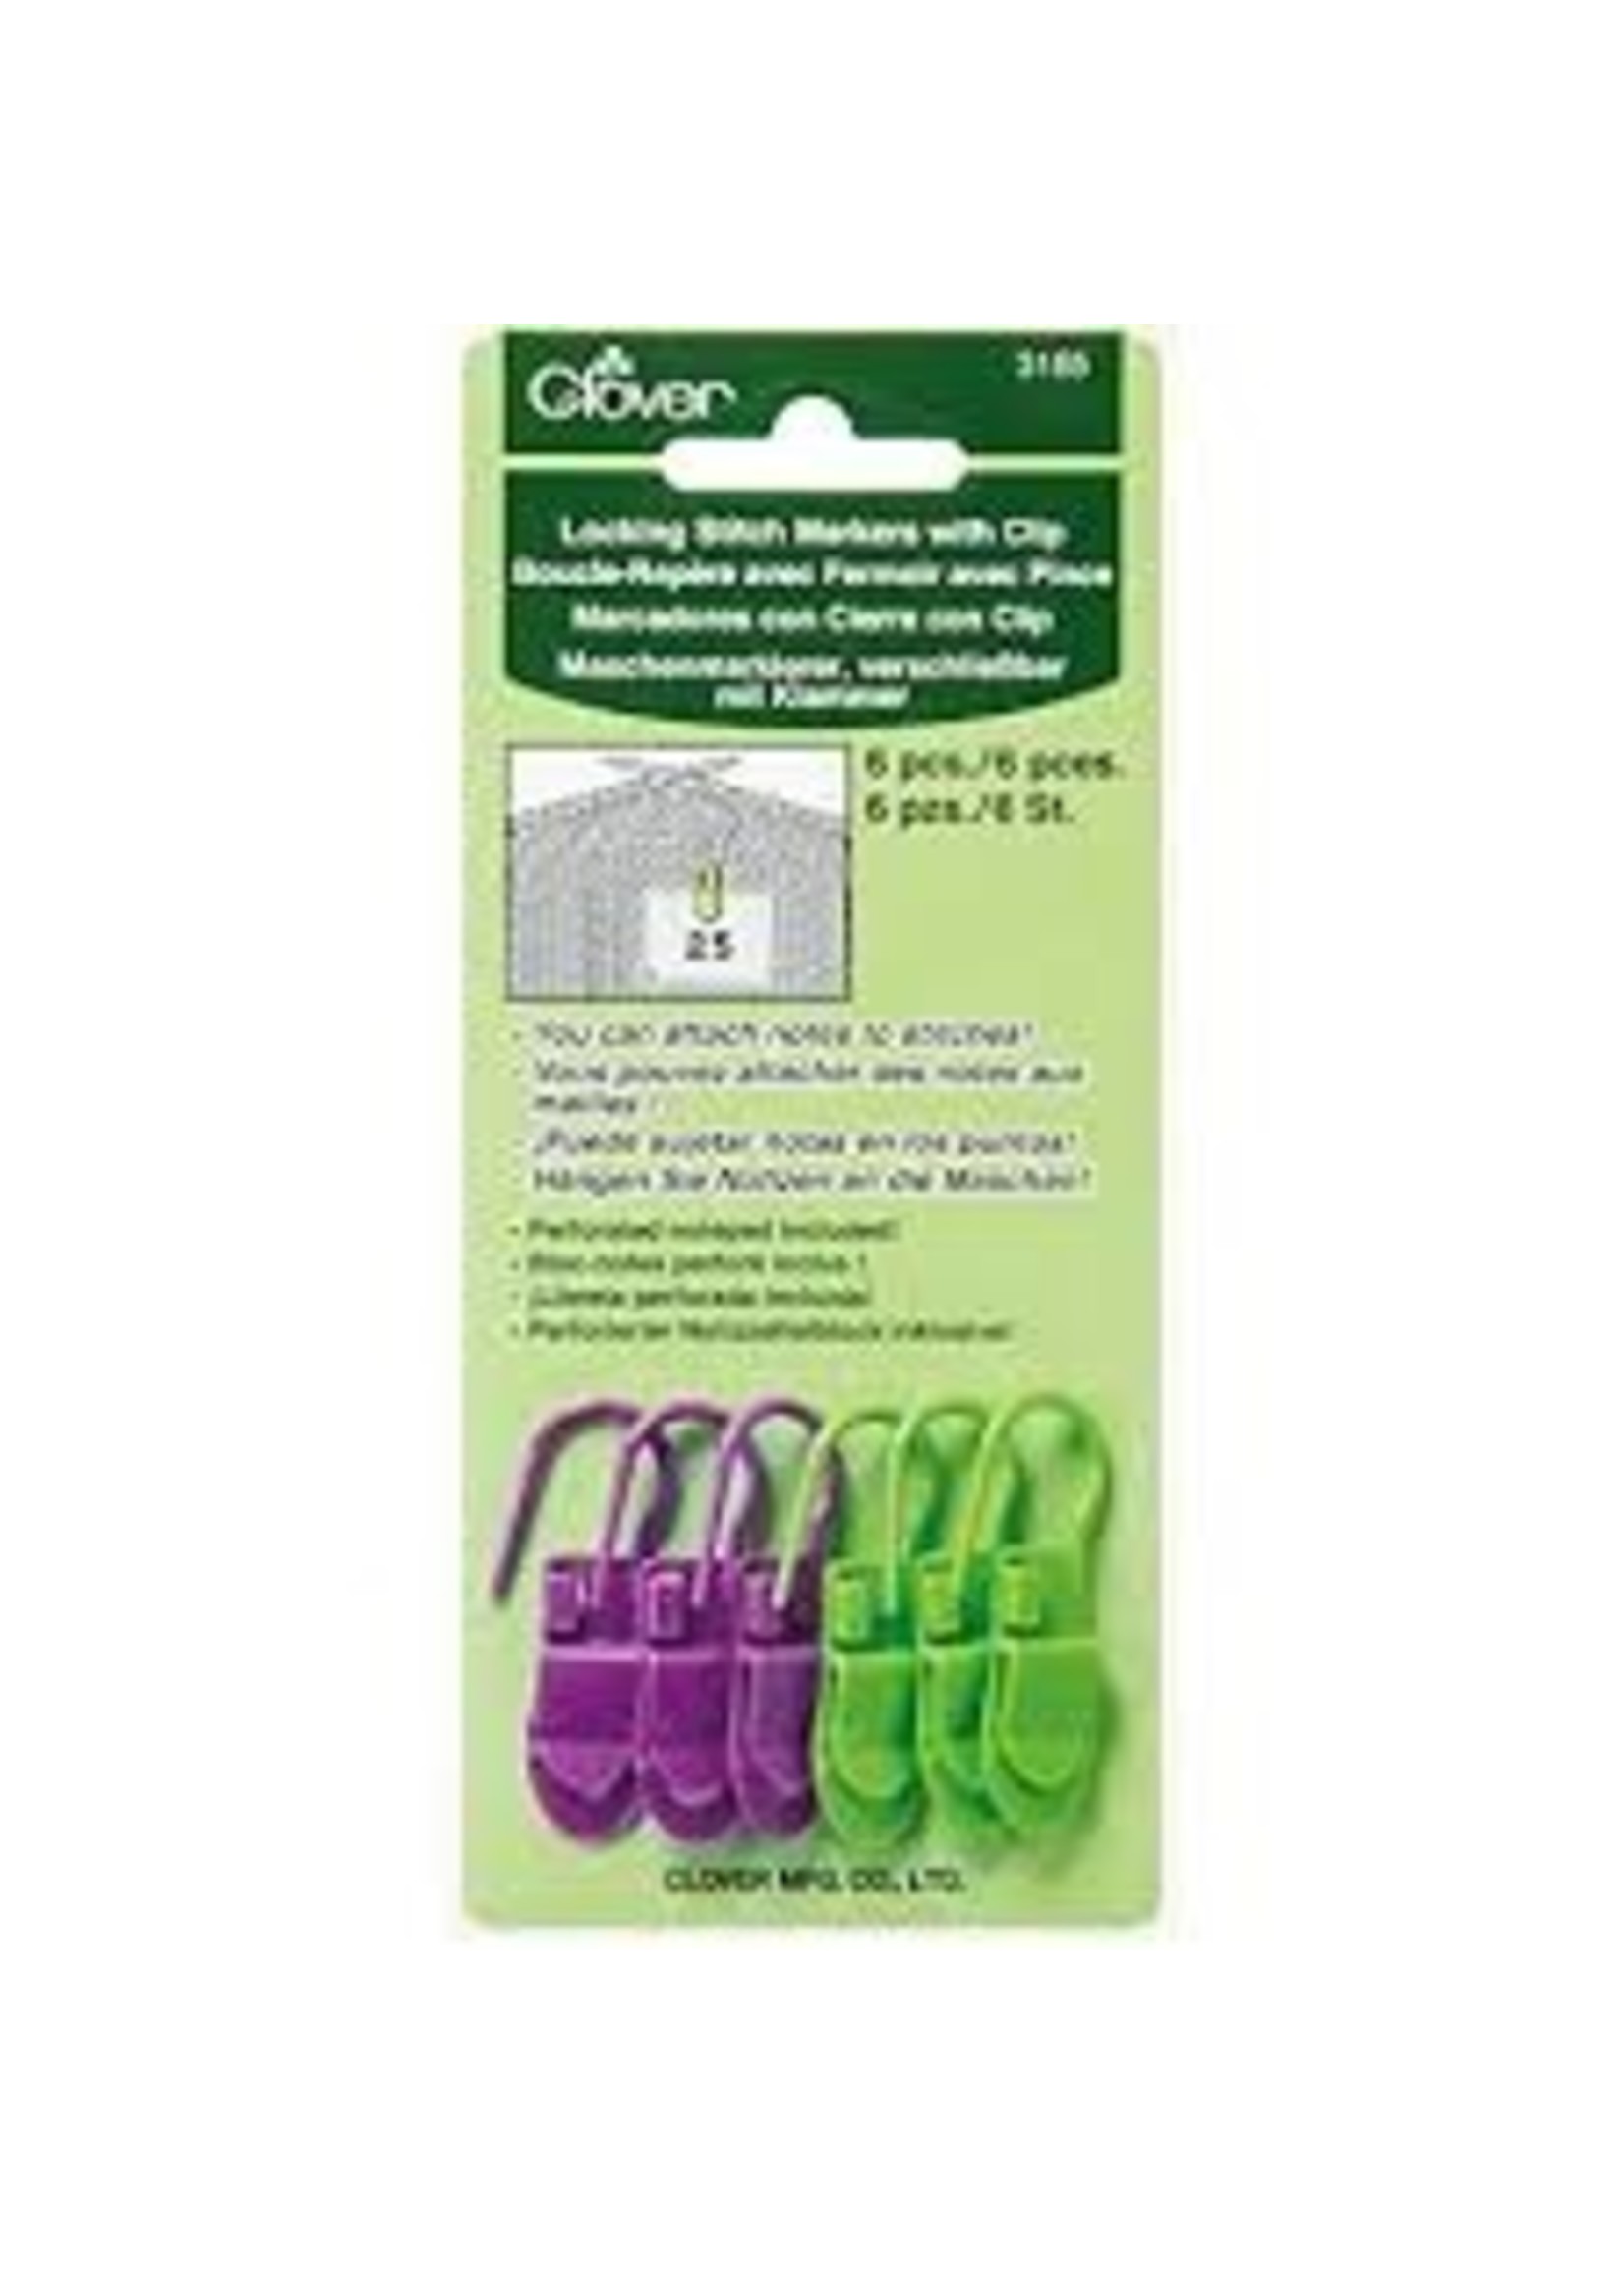 Clover Clip Locking Stitch Marker 3165